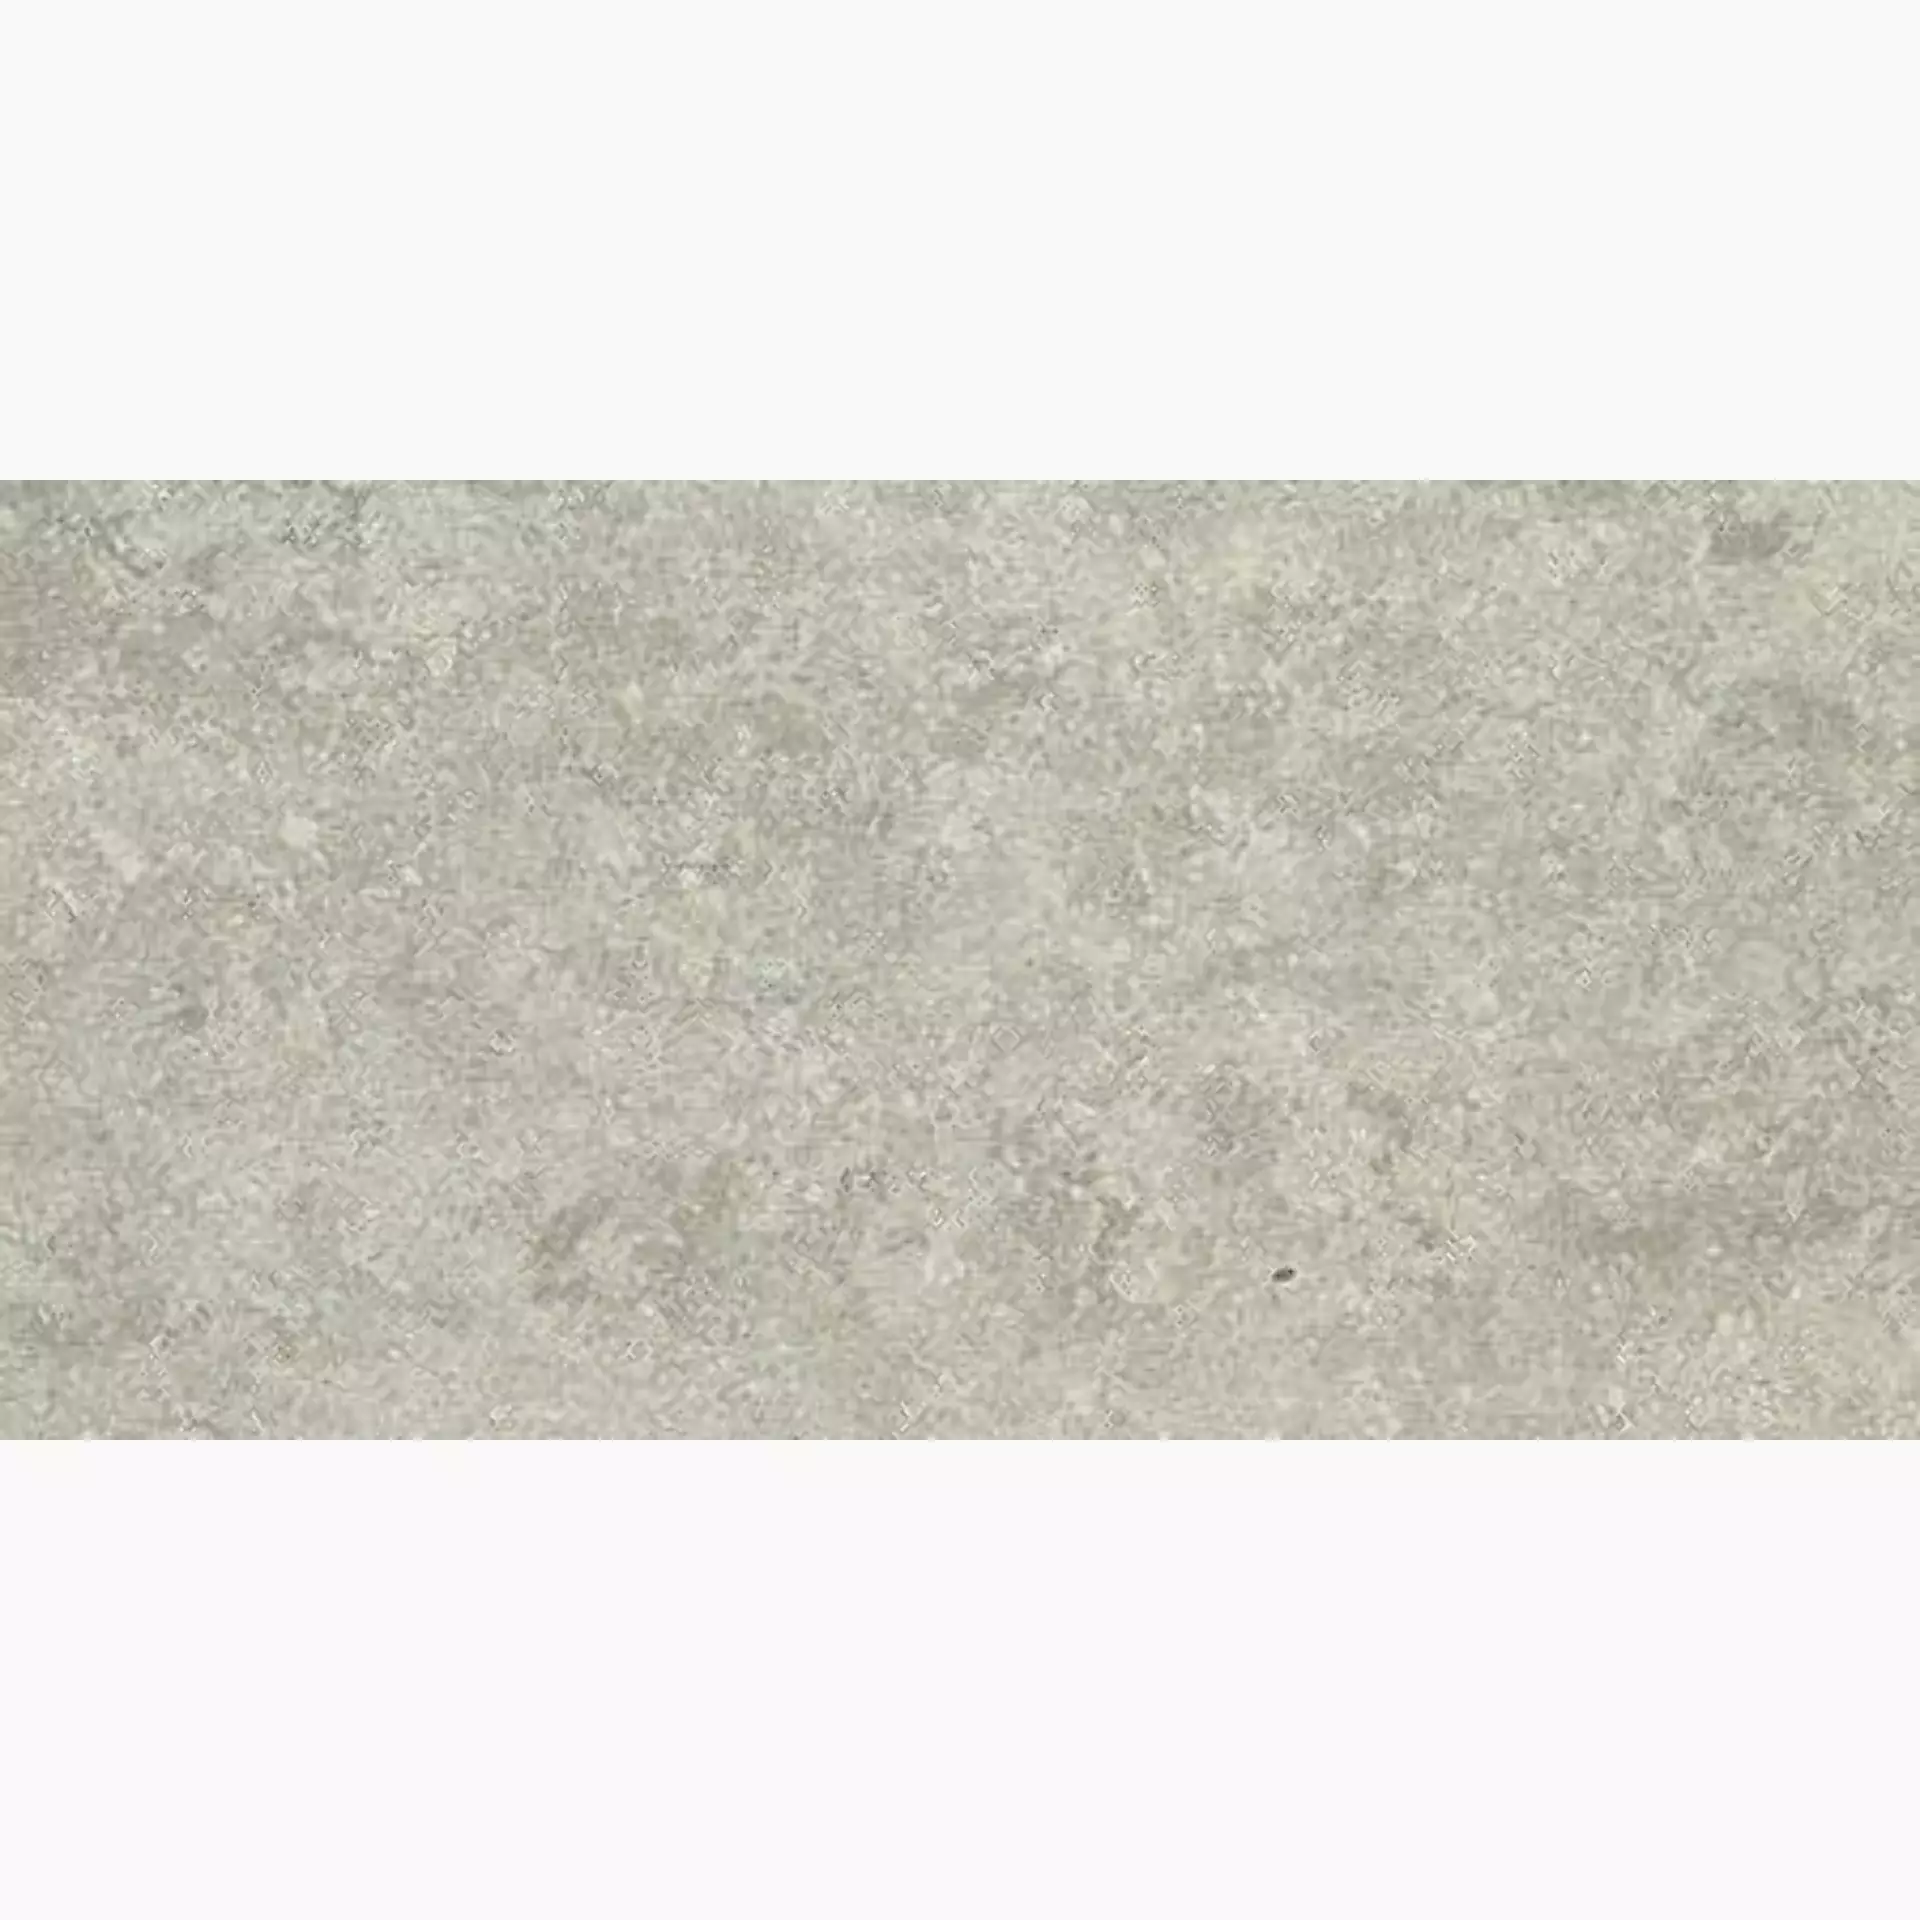 Casalgrande Marte Grigio Ego Naturale – Matt – Antibacterial 9795849 30x60cm rectified 9,4mm